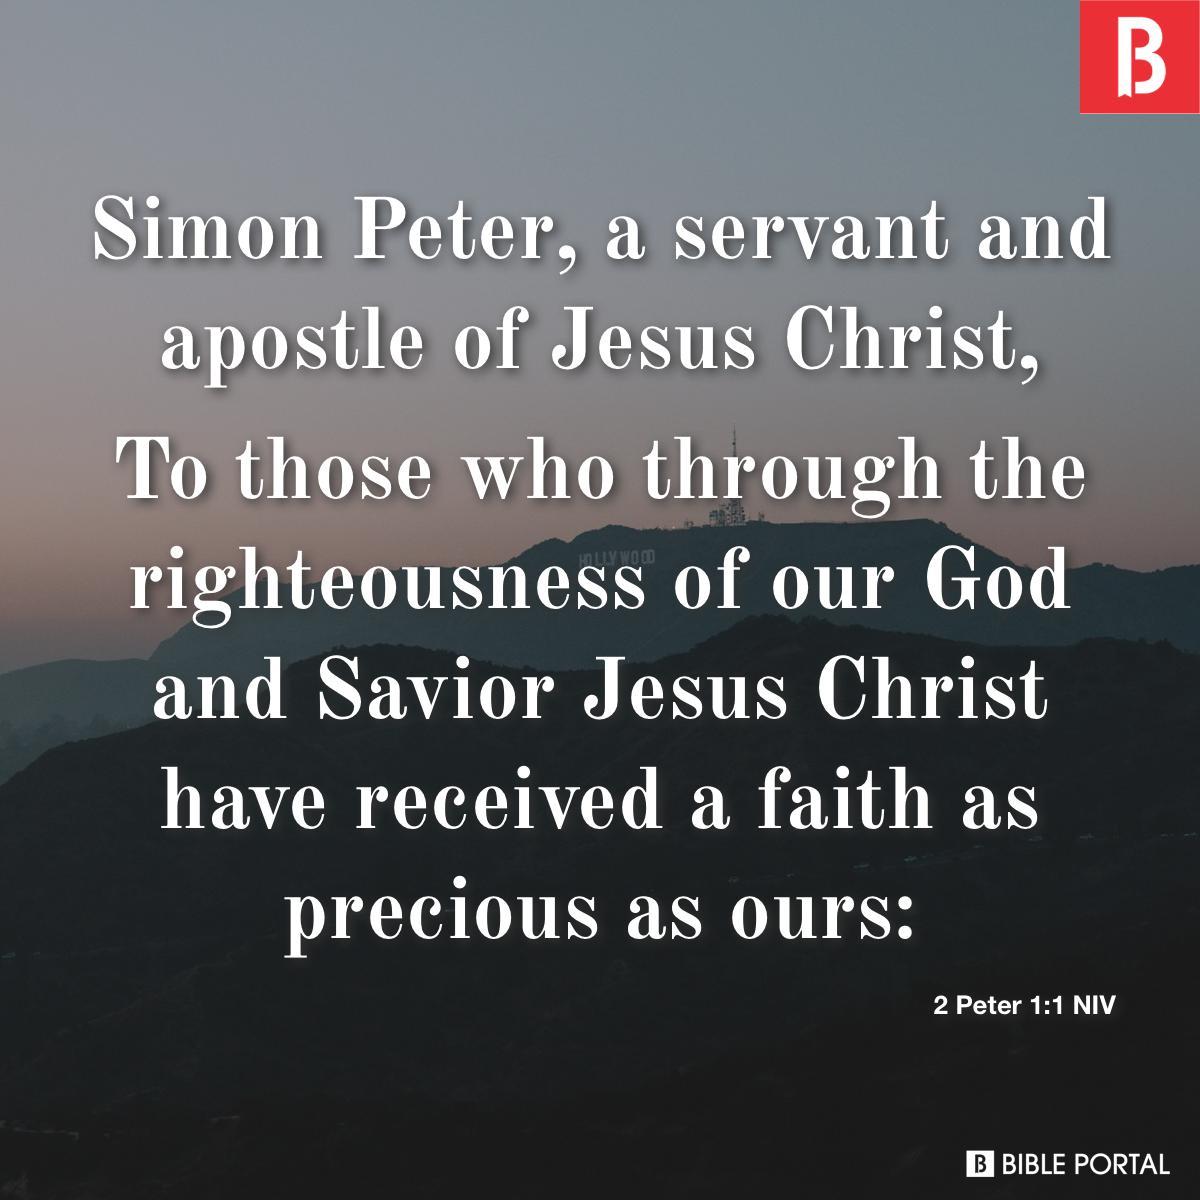 2 Peter 1:1 NIV